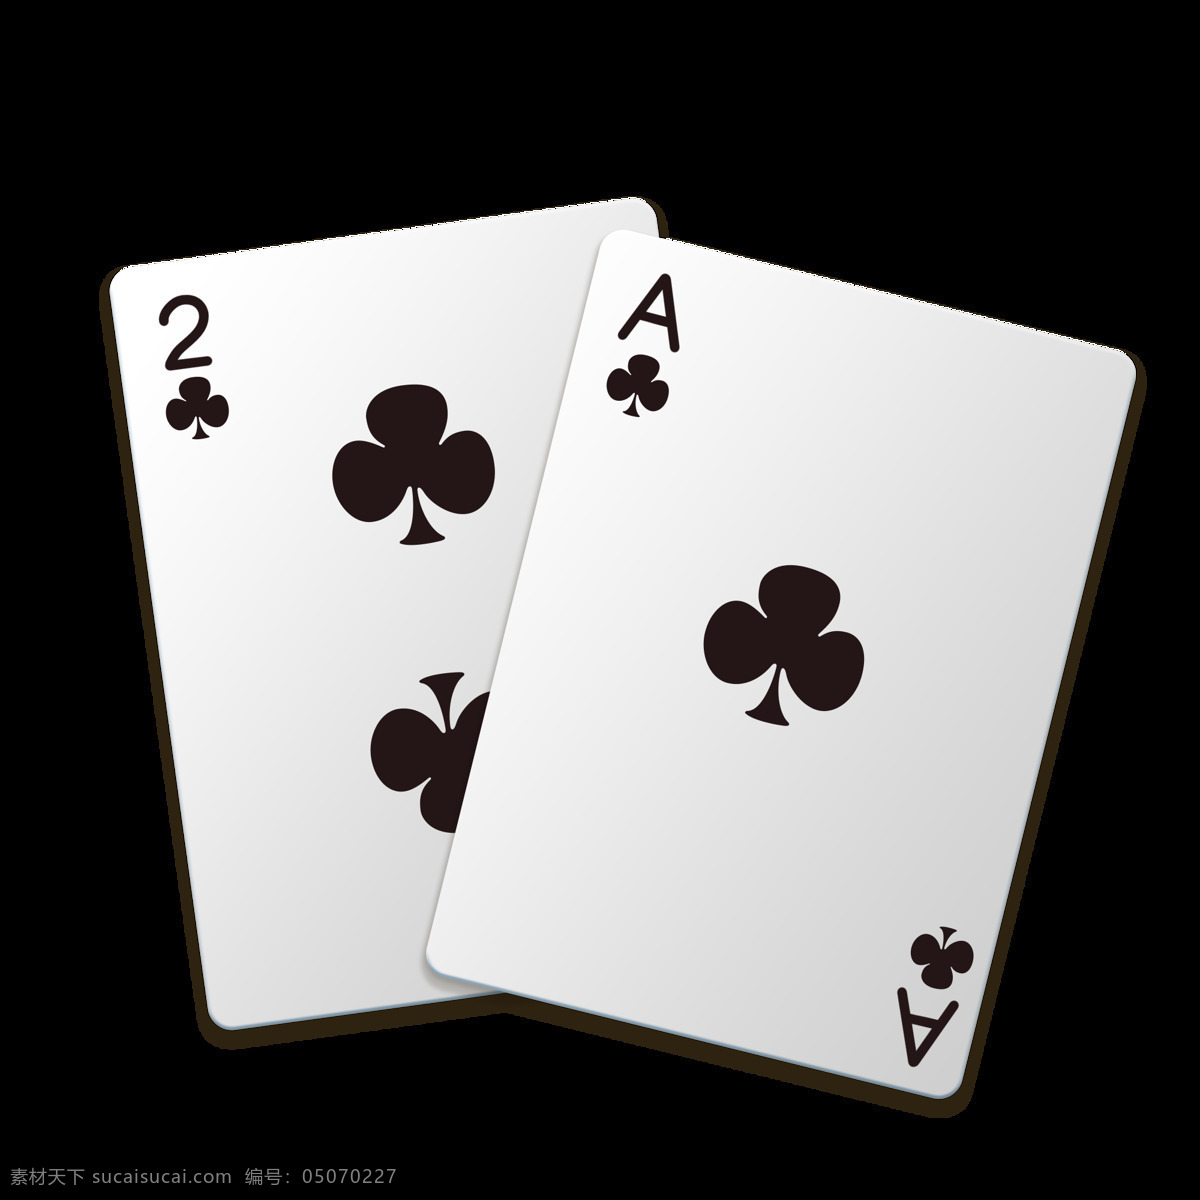 扑克牌免抠 扑克 扑克标志 爱心 方片 黑头 梅花 扑克牌 扑克牌设计 标志图标 其他图标